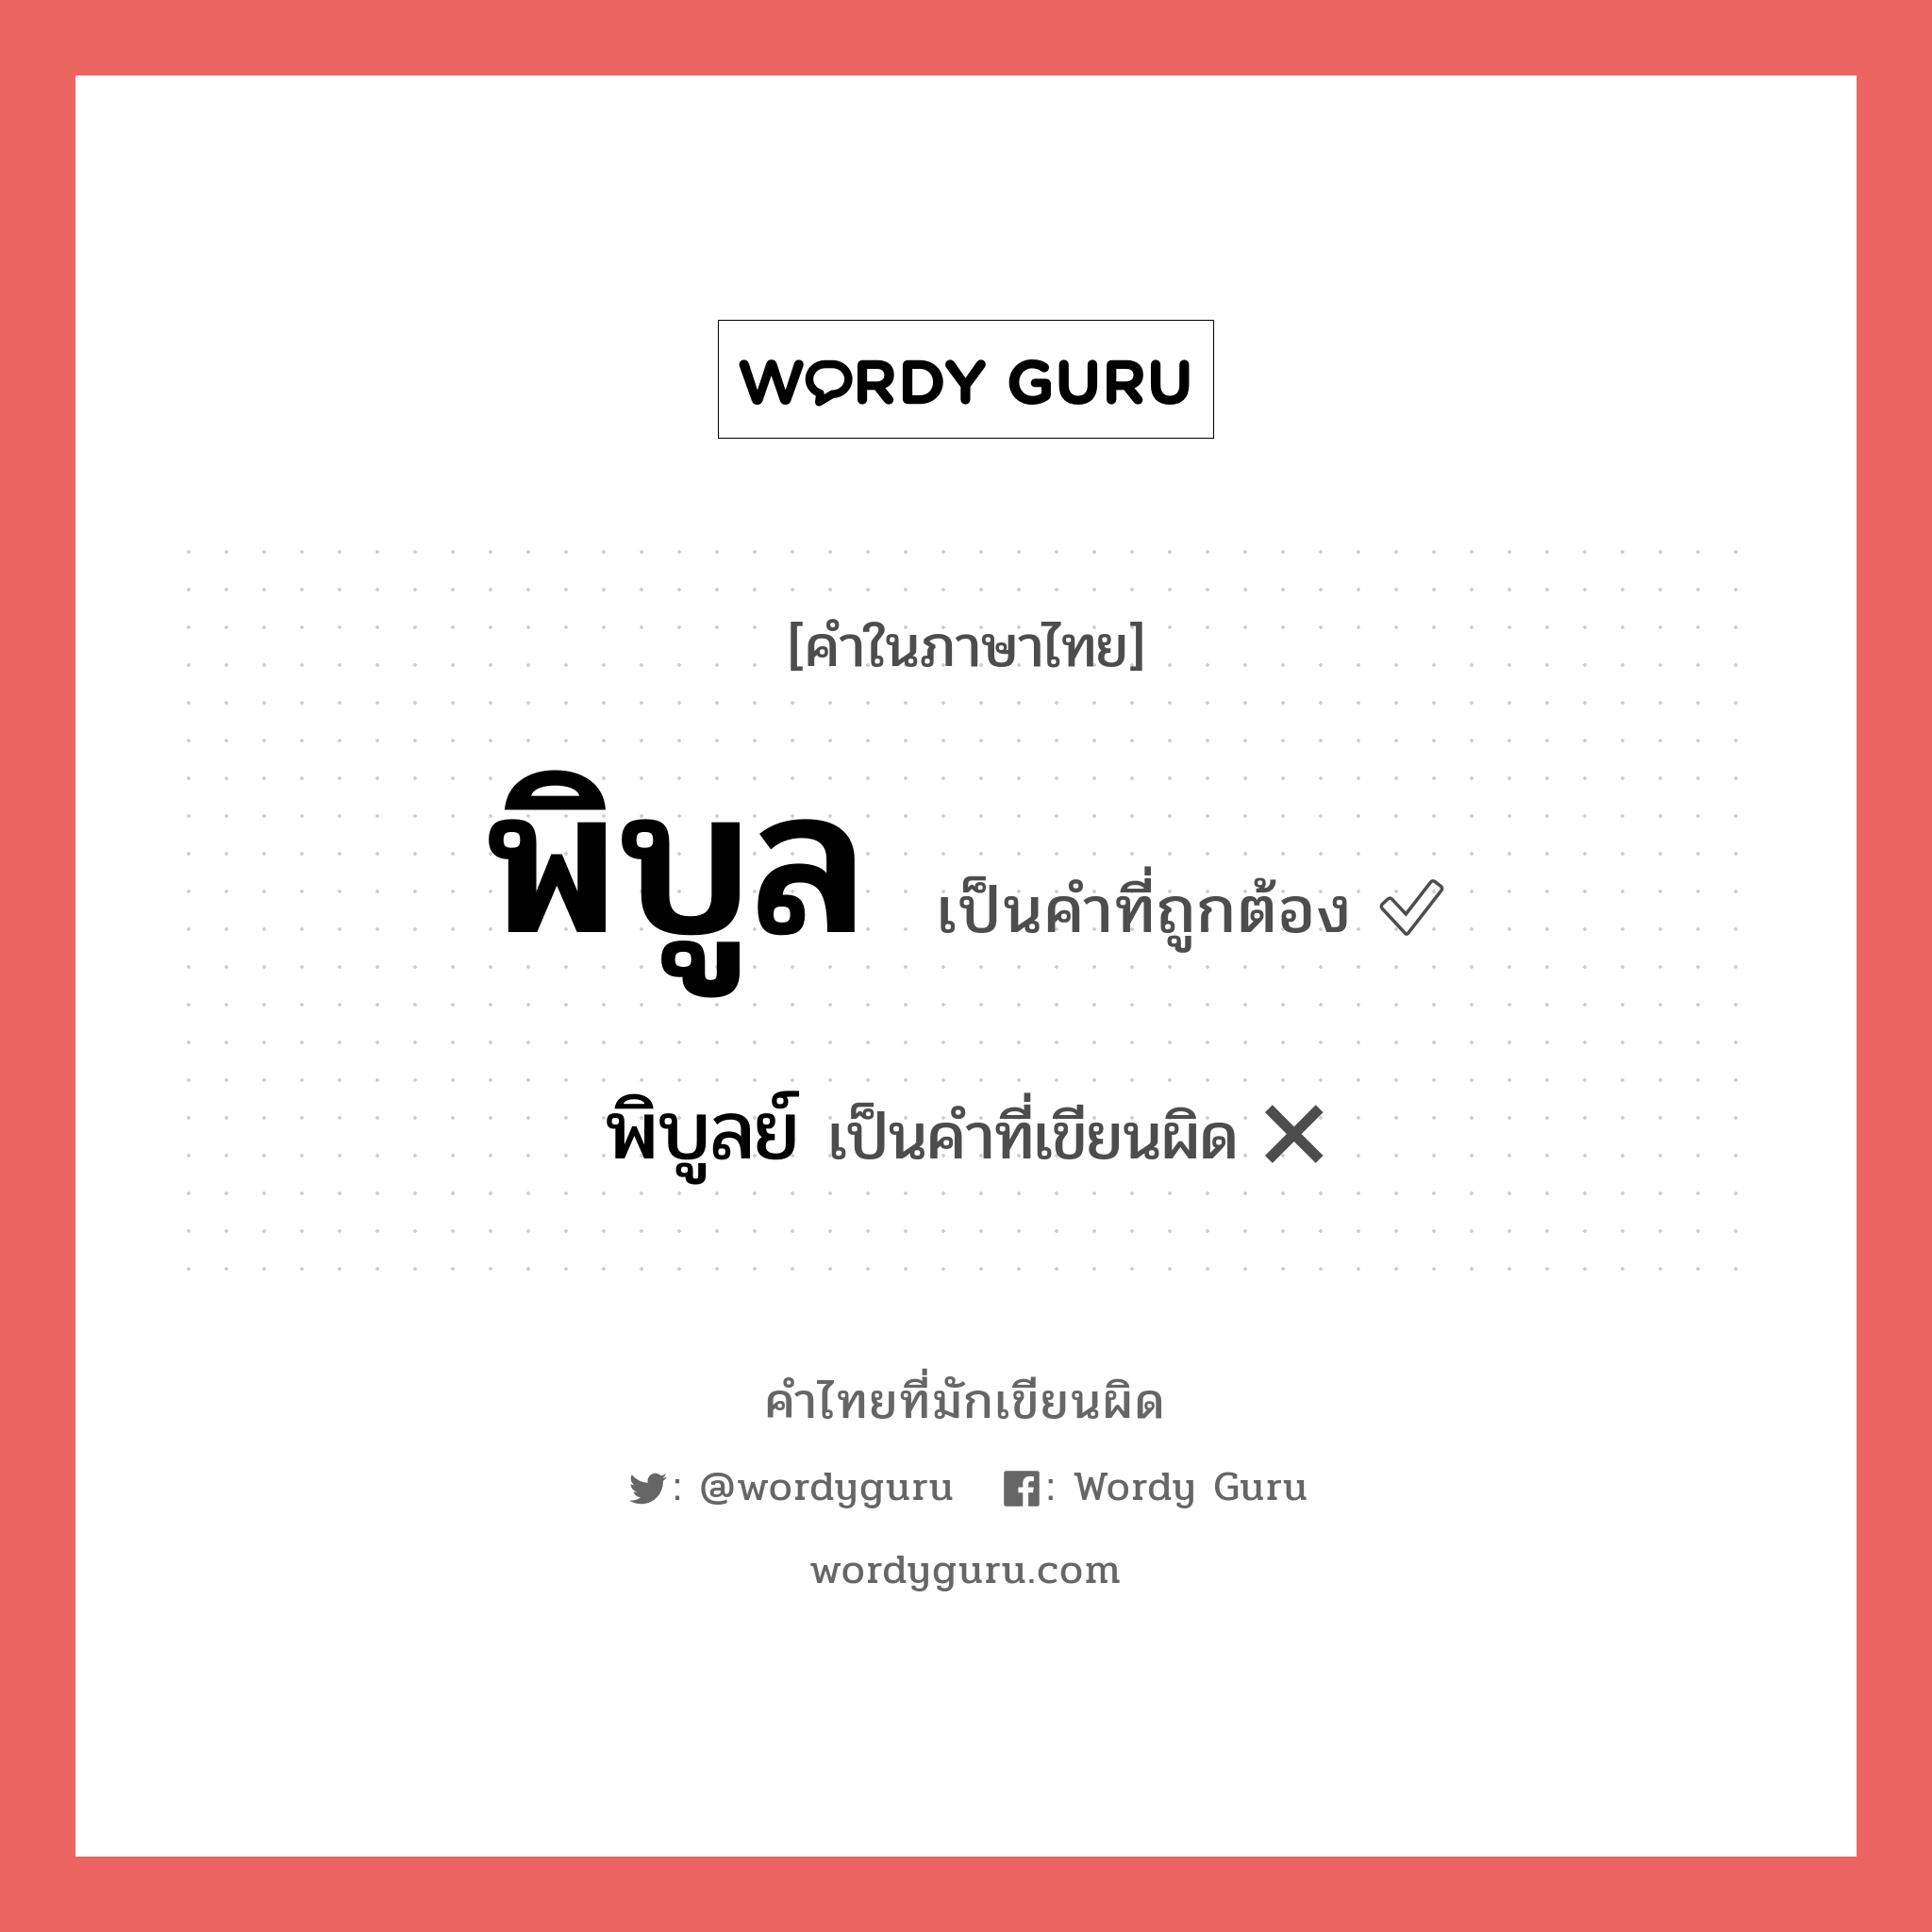 พิบูลย์ หรือ พิบูล คำไหนเขียนถูก?, คำในภาษาไทยที่มักเขียนผิด พิบูลย์ คำที่ผิด ❌ พิบูล